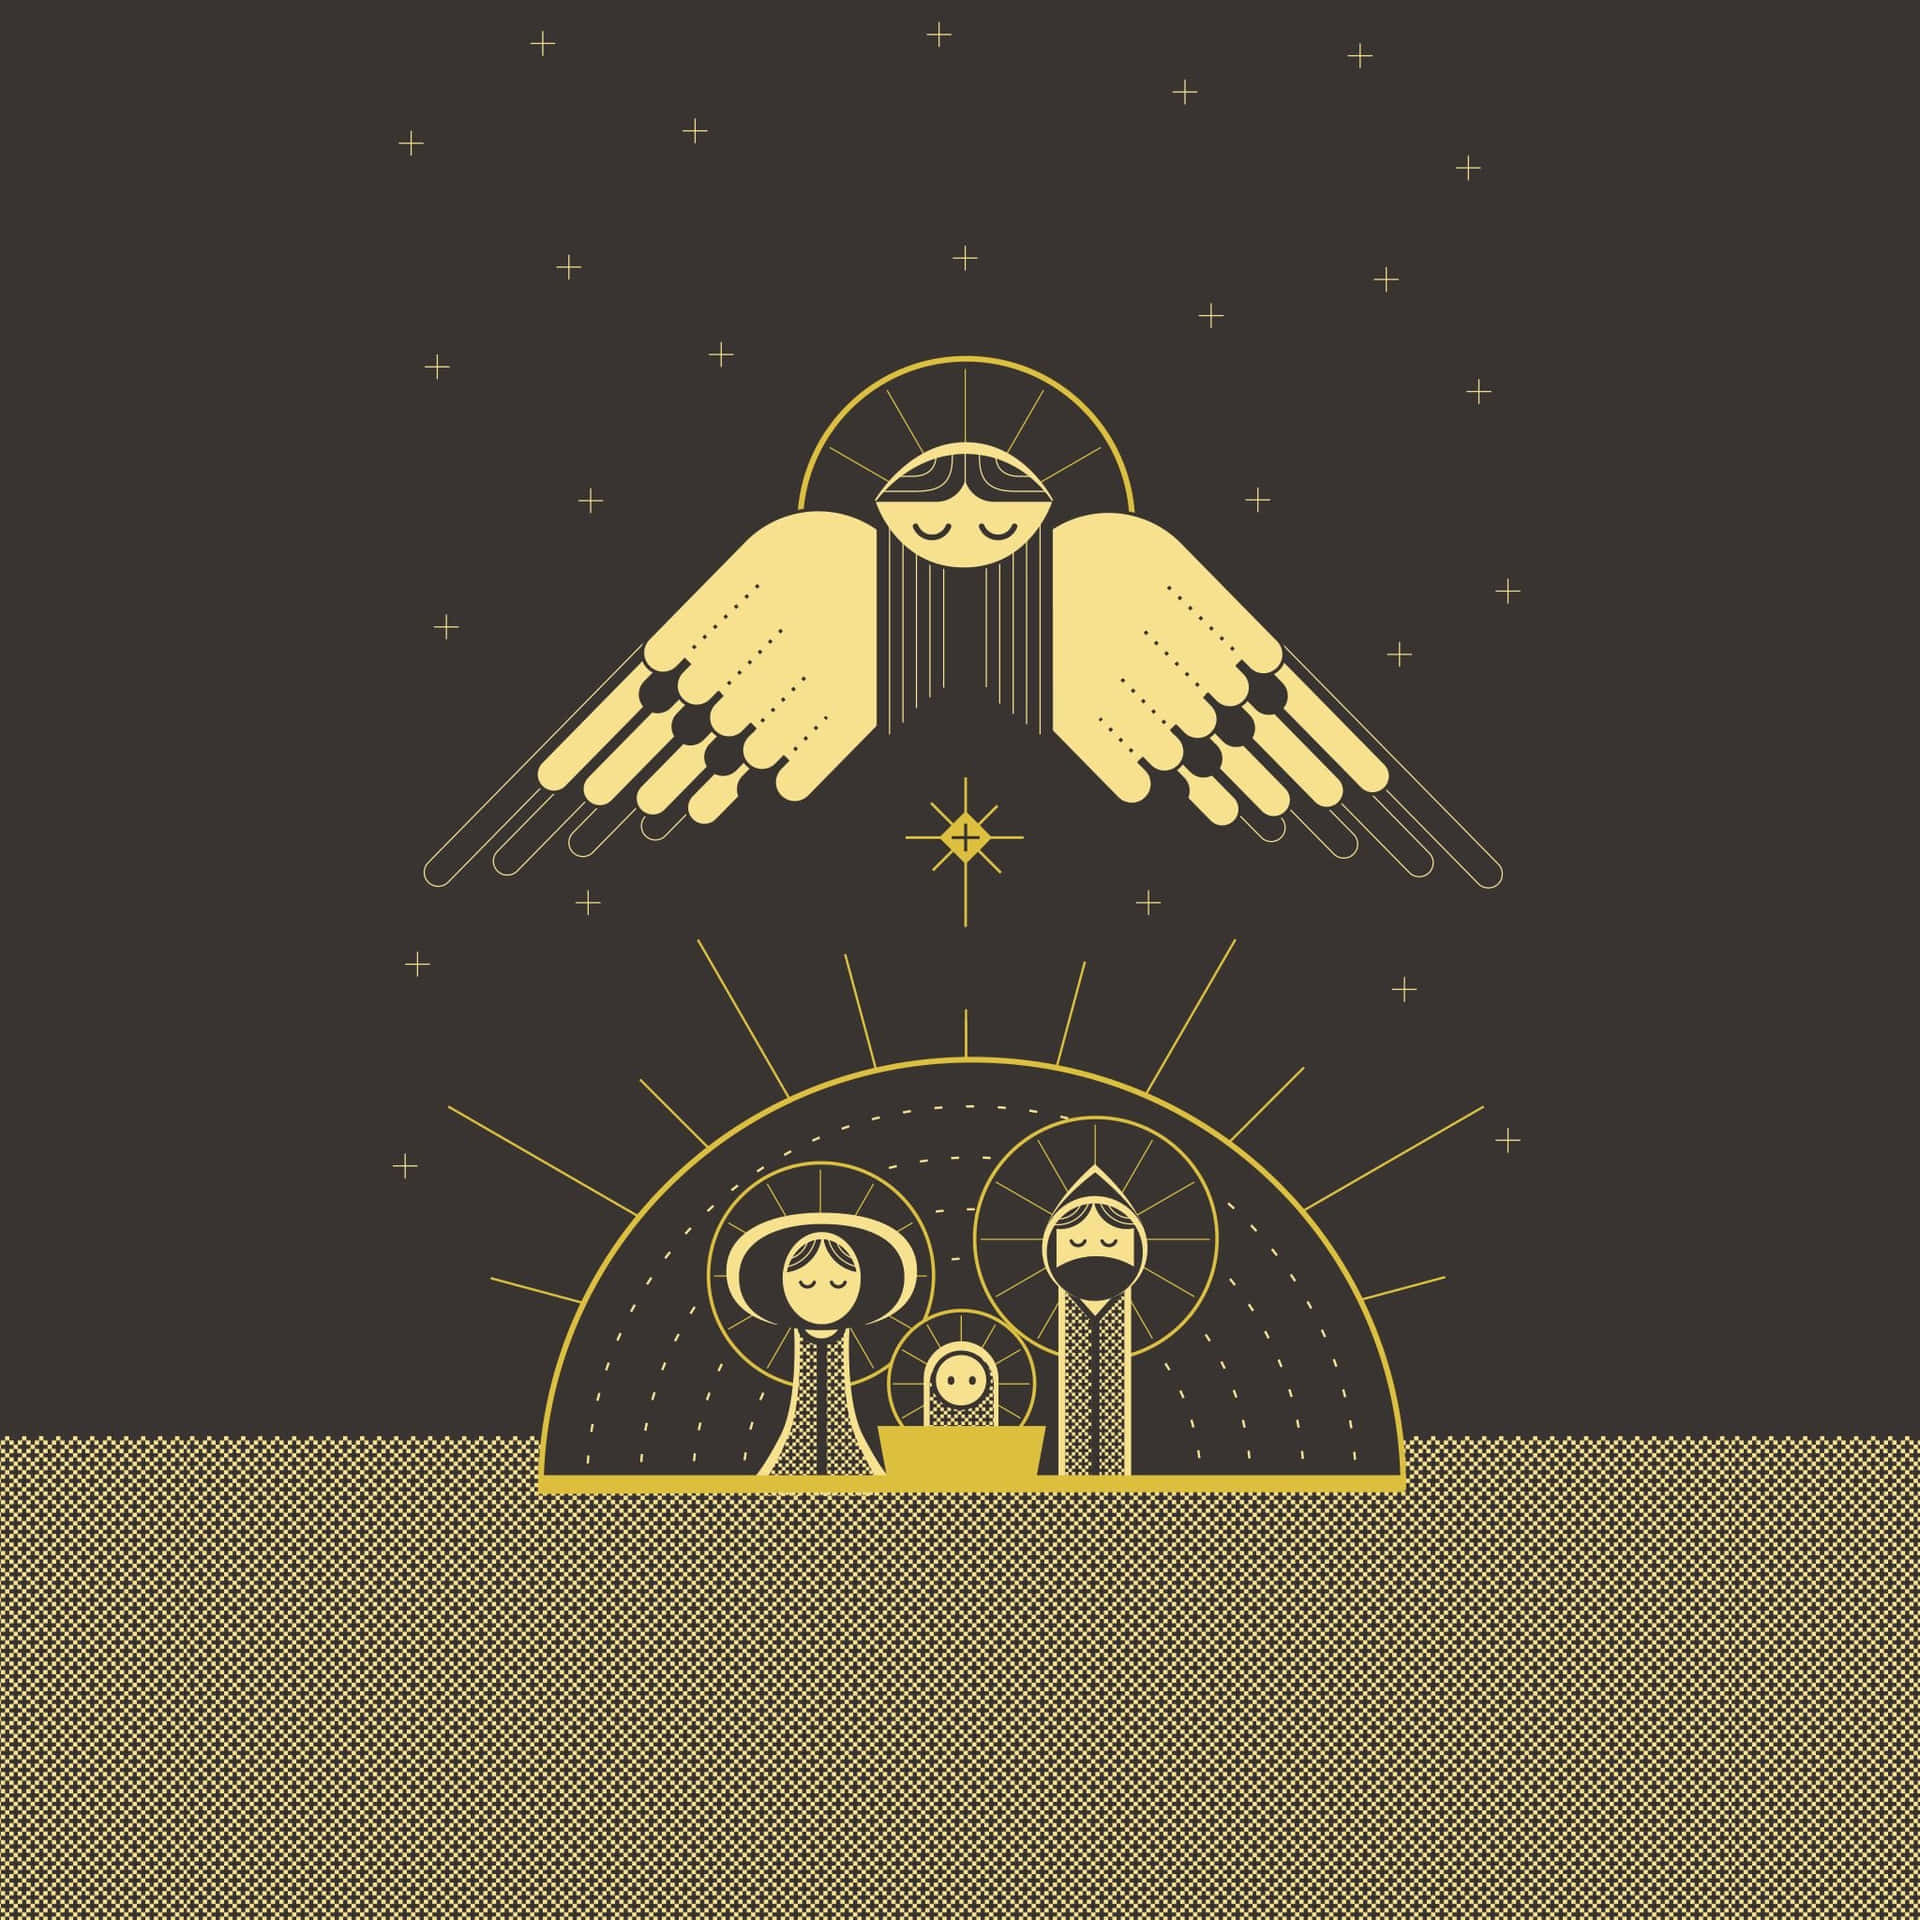 En natsscene med engle og Jesus. Wallpaper